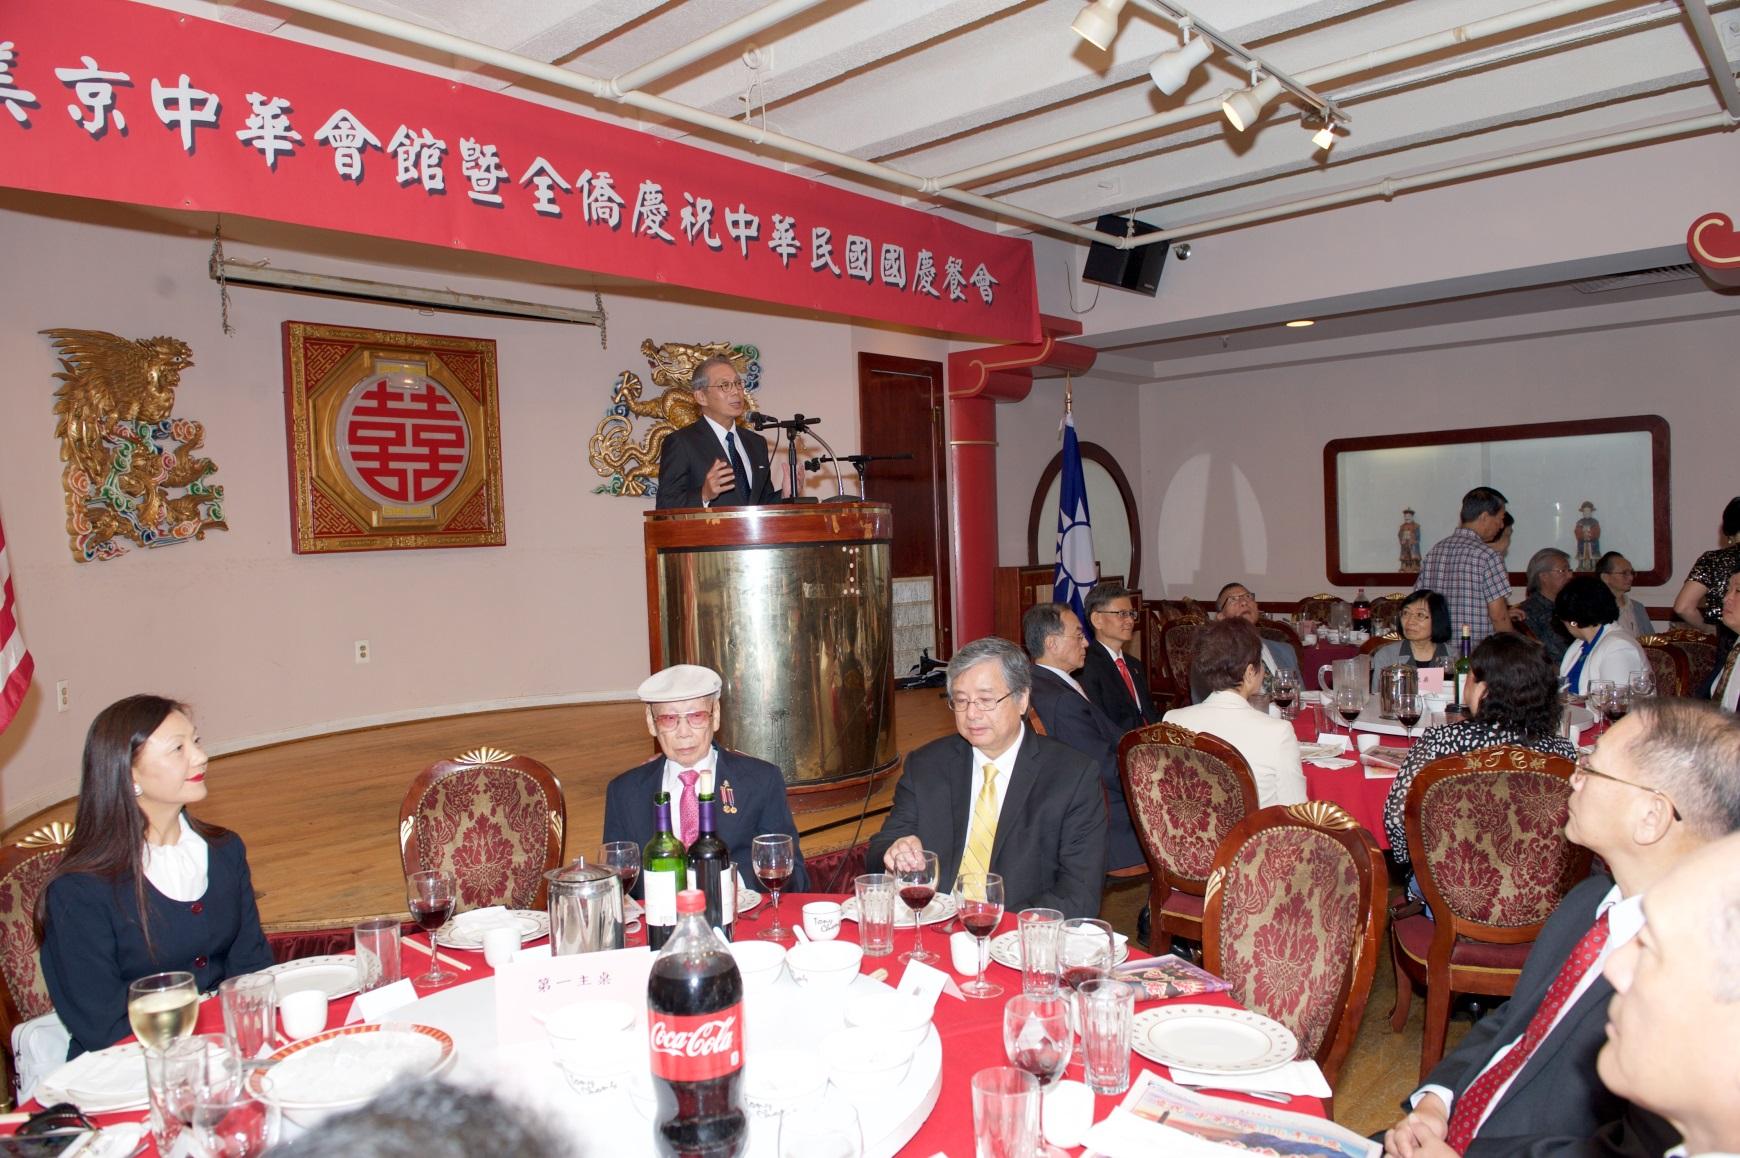 高大使於美京中華會館暨全僑慶祝中華民國國慶聯歡餐會致詞。
Ambassador Kao delivered remarks at the luncheon celebrating the National Day of the Republic of China (Taiwan) held by CCBA and Taiwanese/Chinese community on Oct. 8, 2017.